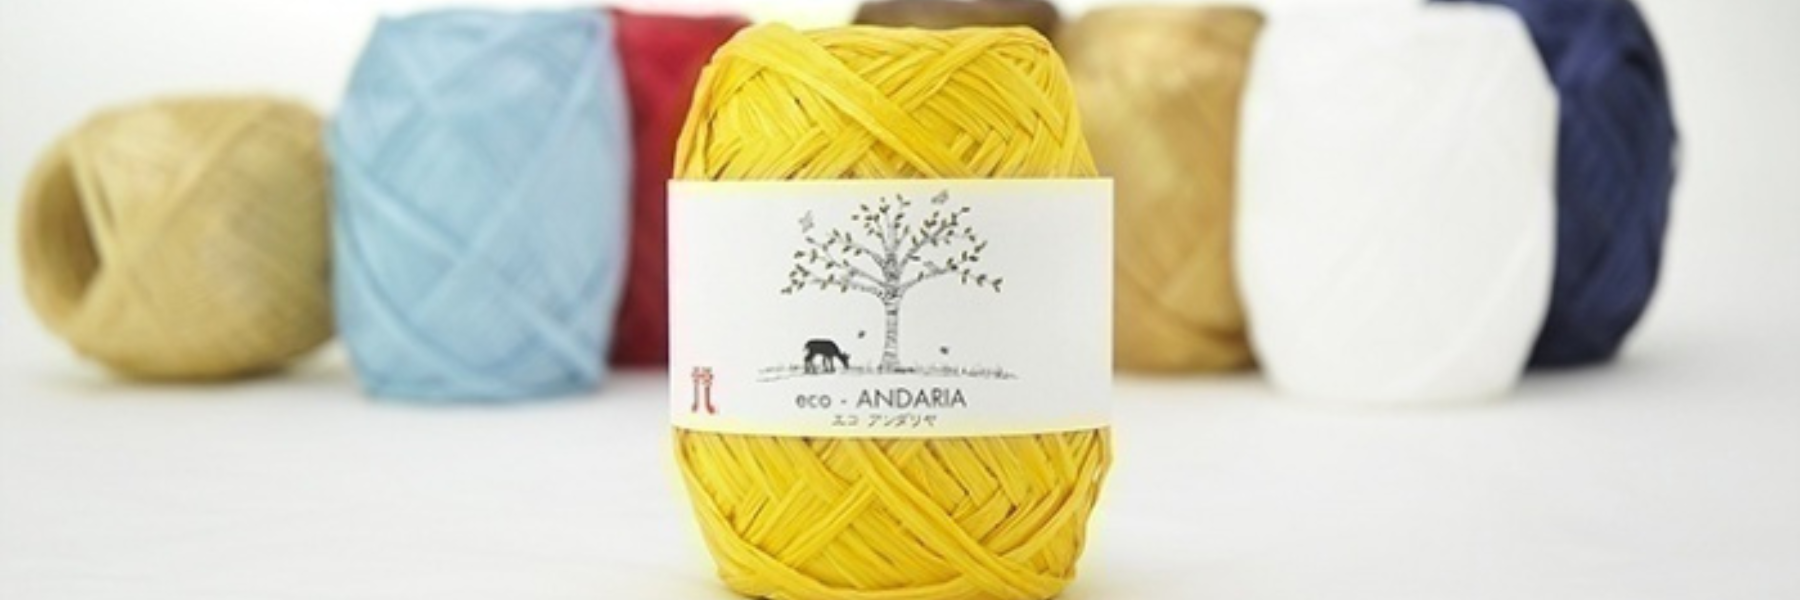 Hamanaka Eco-Andaria Raffia Yarn